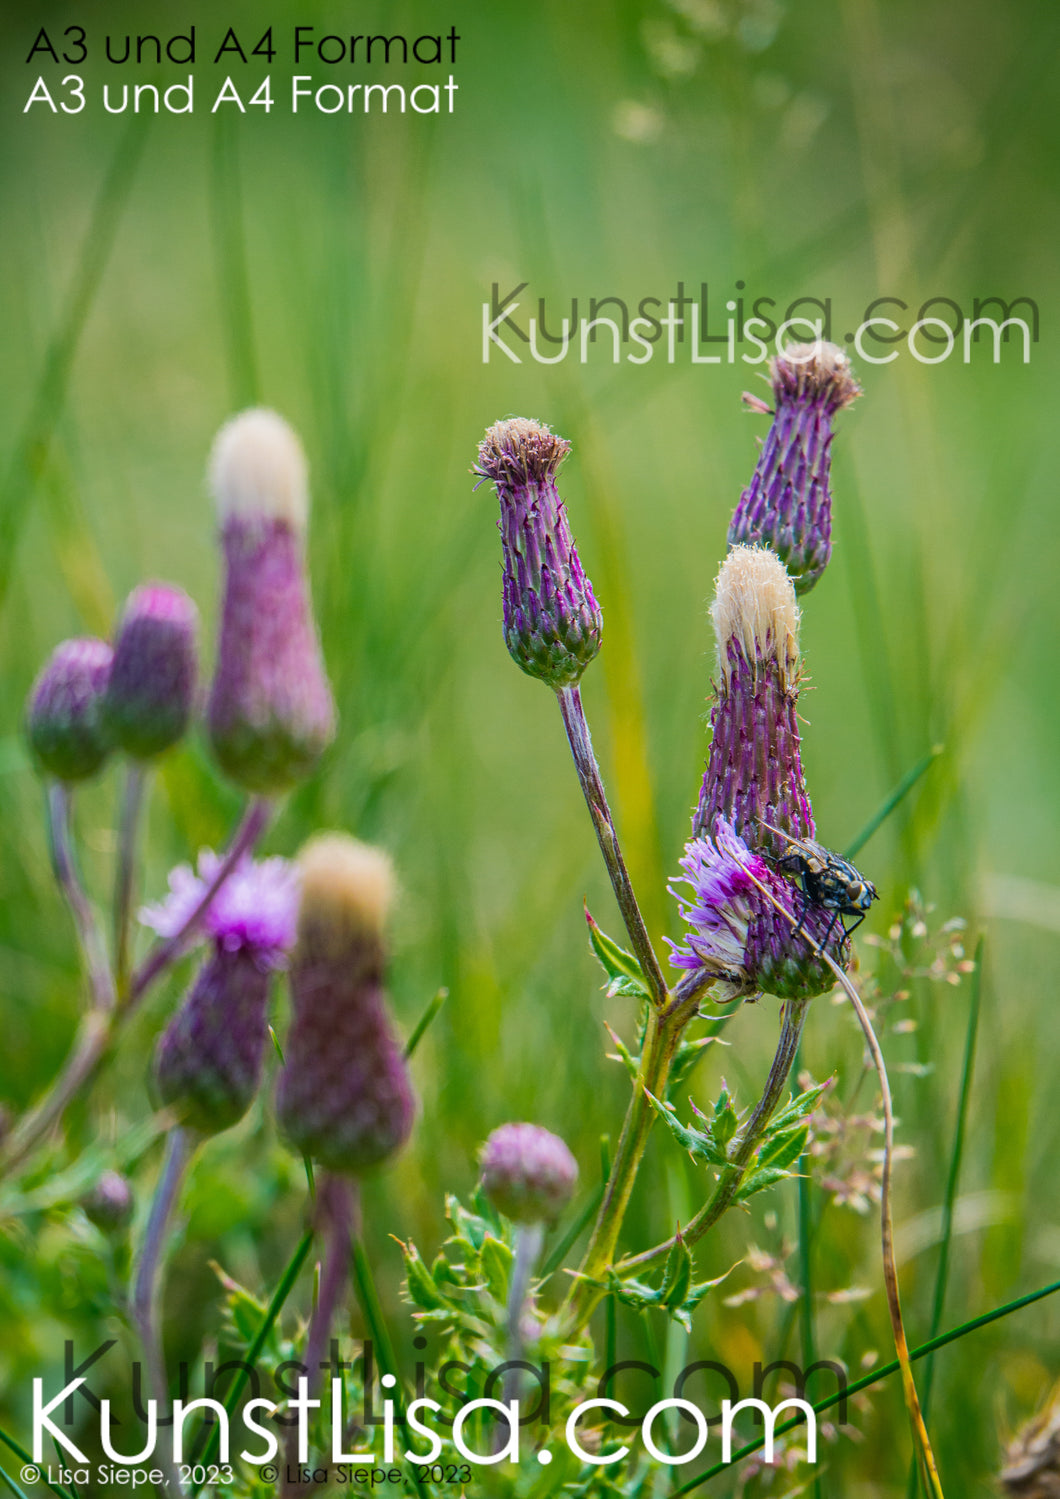 Detailaufnahme-von-den-lila-Blüten-der-Ackerdistel-Fliege-auf-Blüte-Natur-in-Neuseeland-Format-A3-und-A4